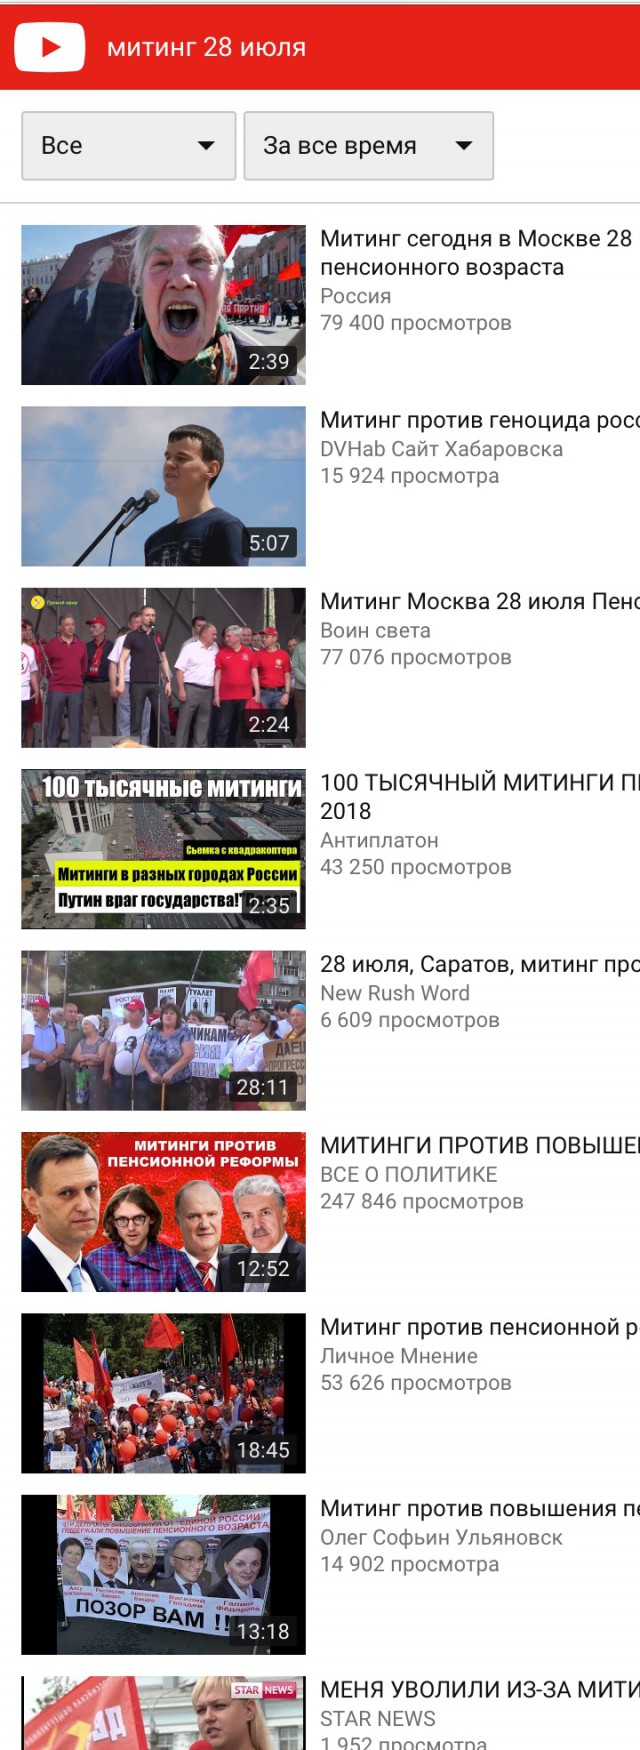 Российское телевидение опять не разглядело протесты